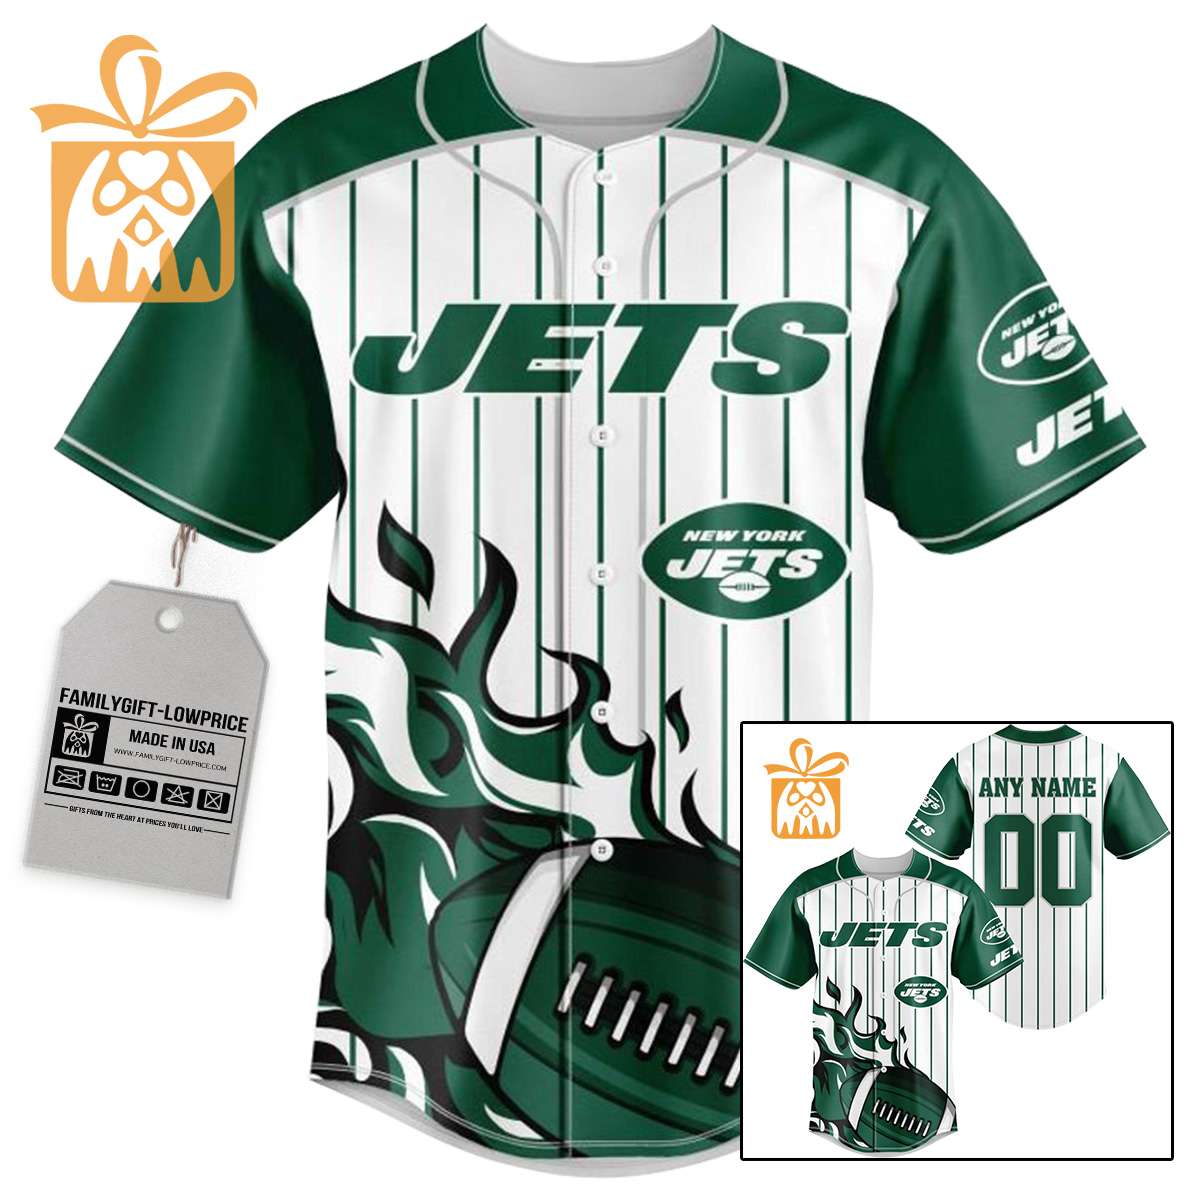 NFL Baseball Jersey - New York Jets Baseball Jersey TShirt - Personalized Baseball Jerseys